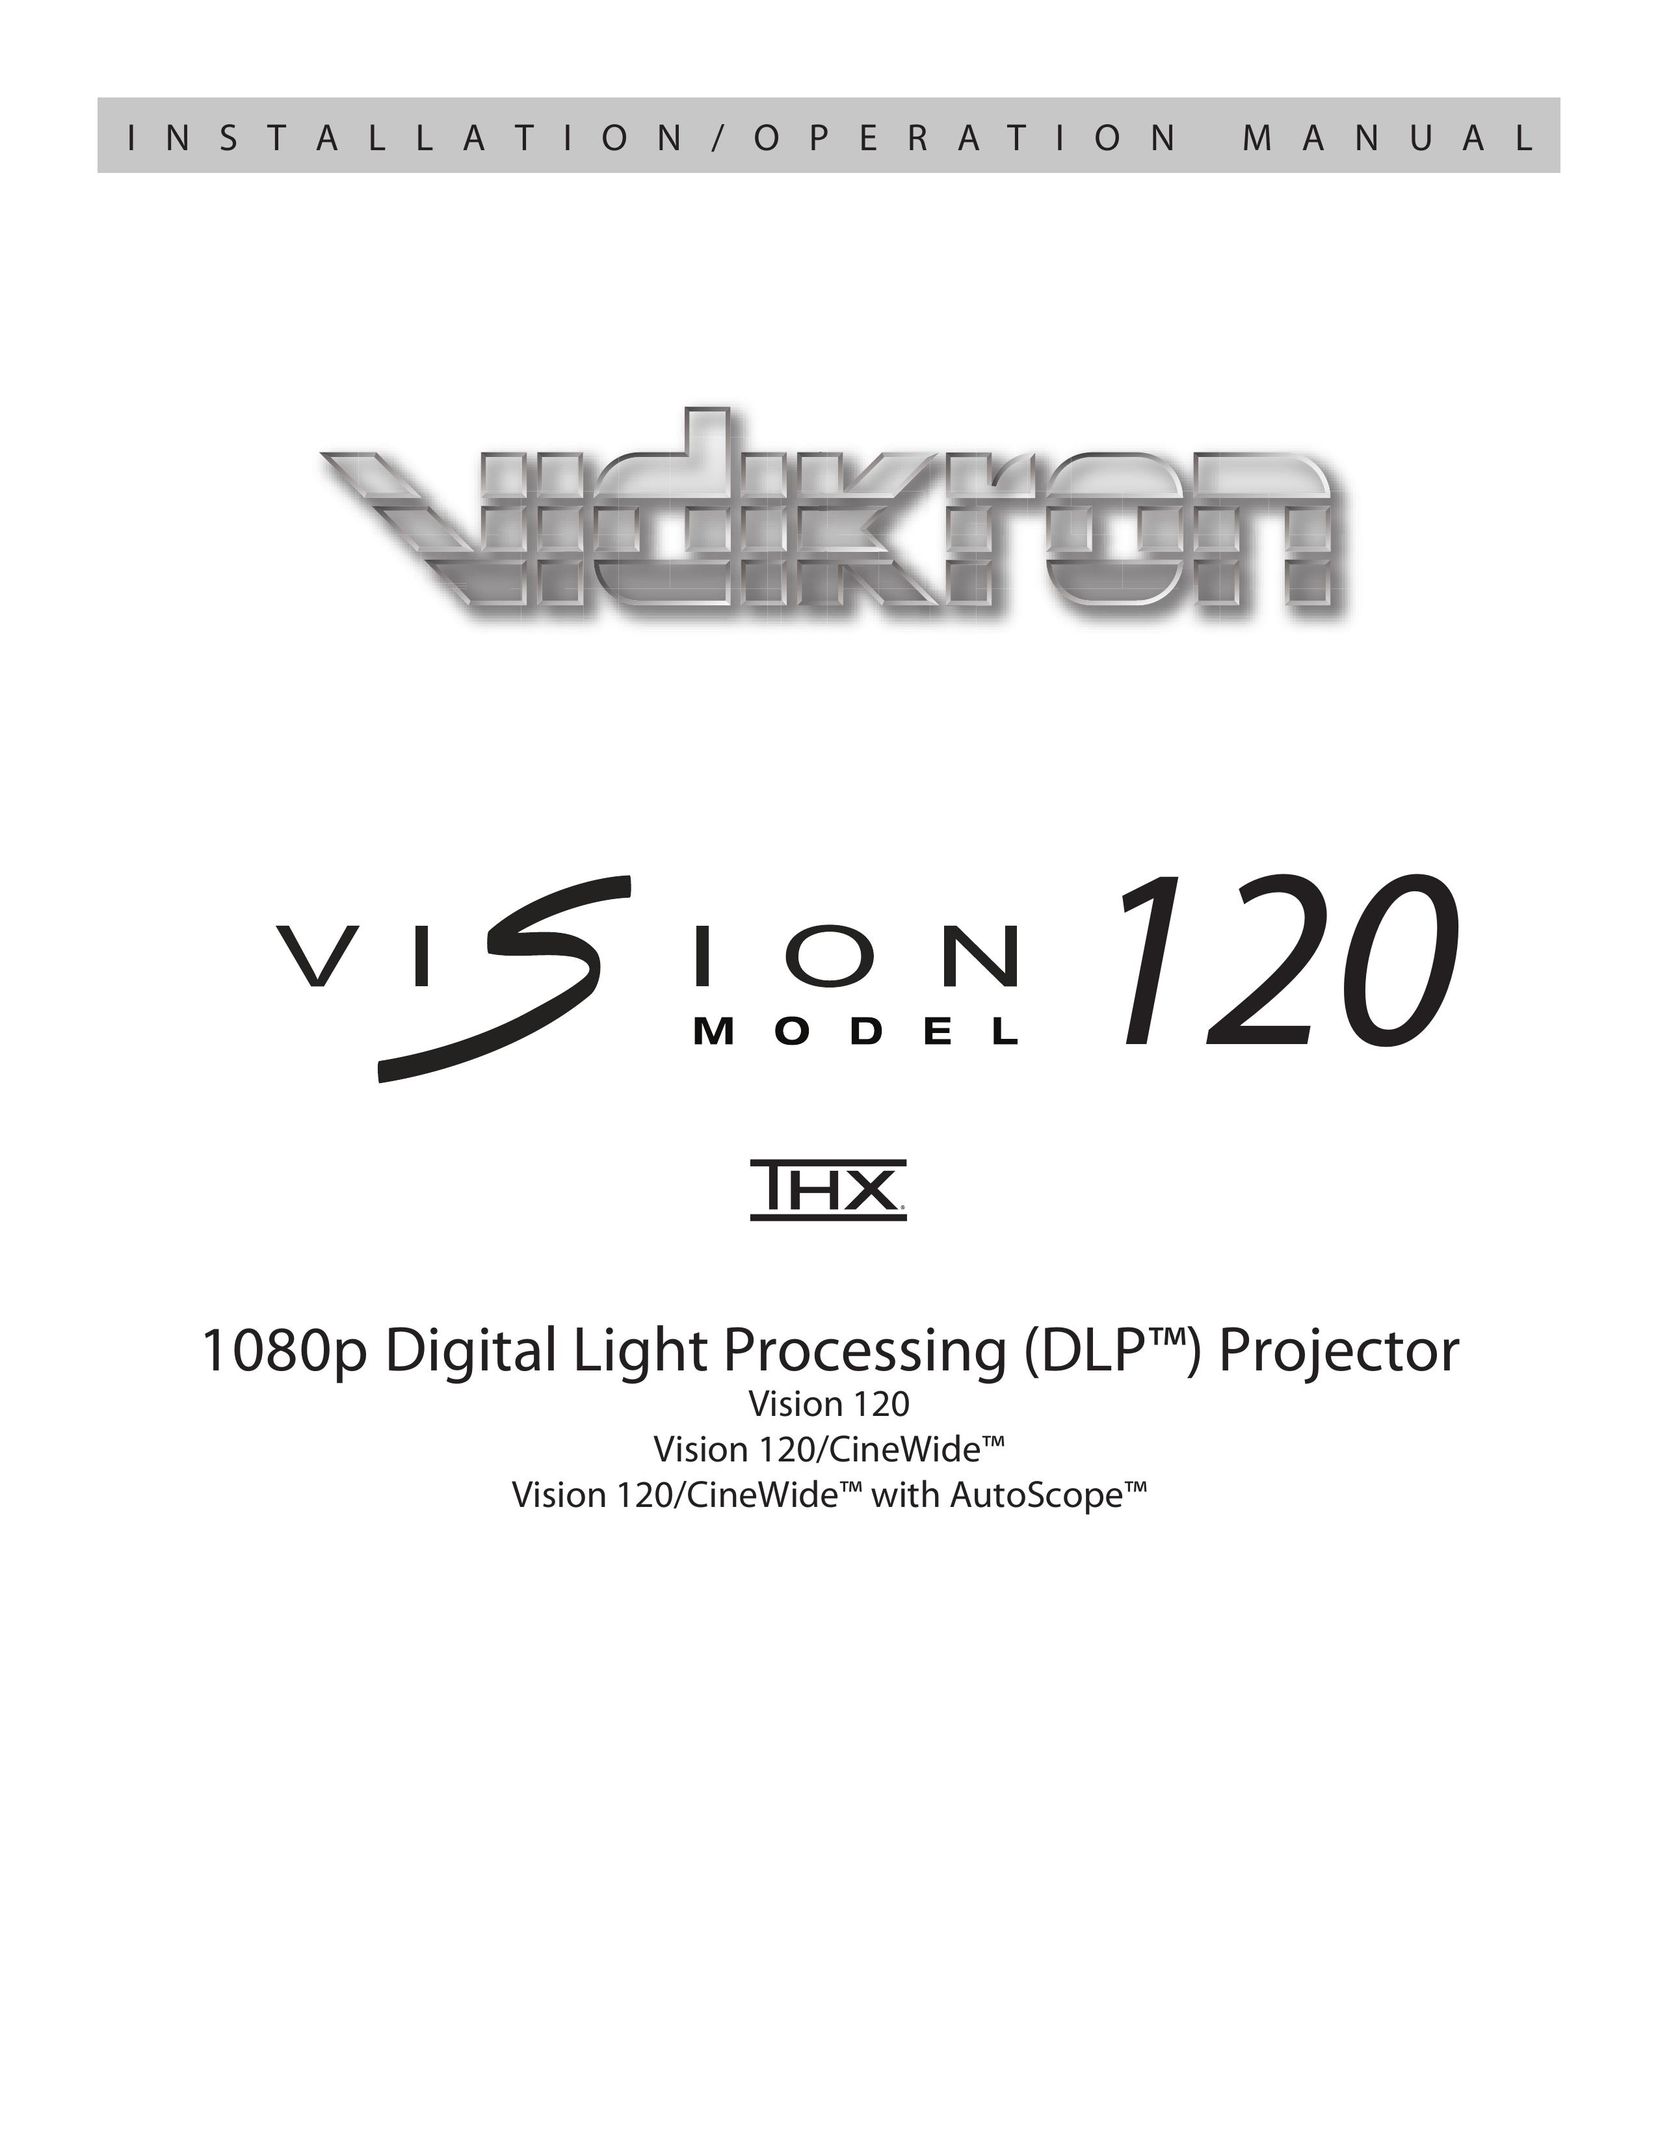 Vidikron Vision 120 Projection Television User Manual